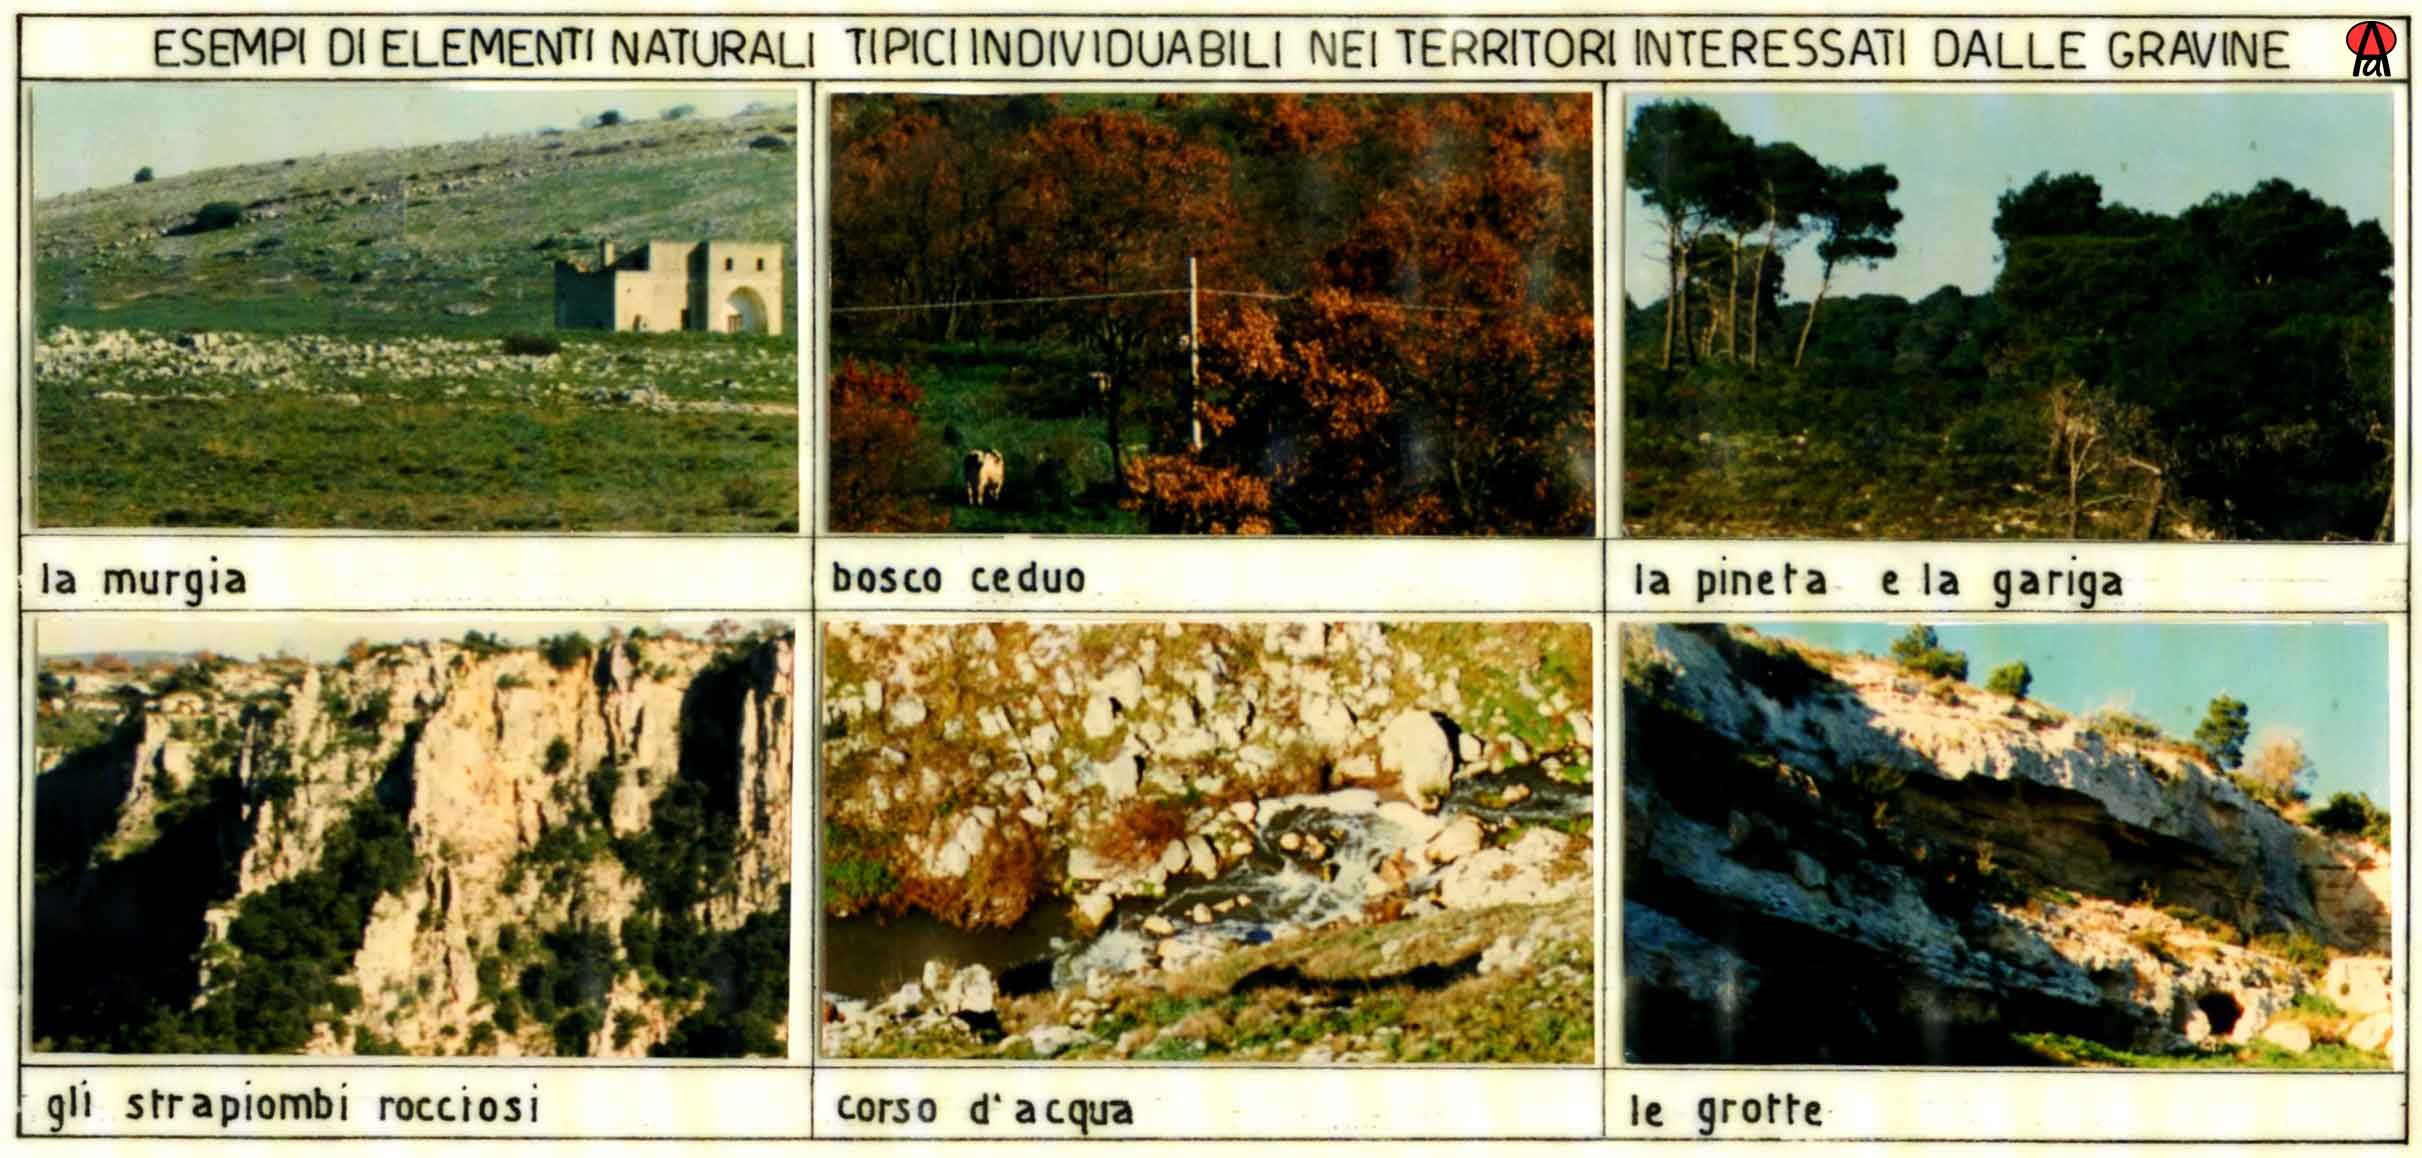 Foto con esempi di elementi naturali tipici nei territori delle gravine